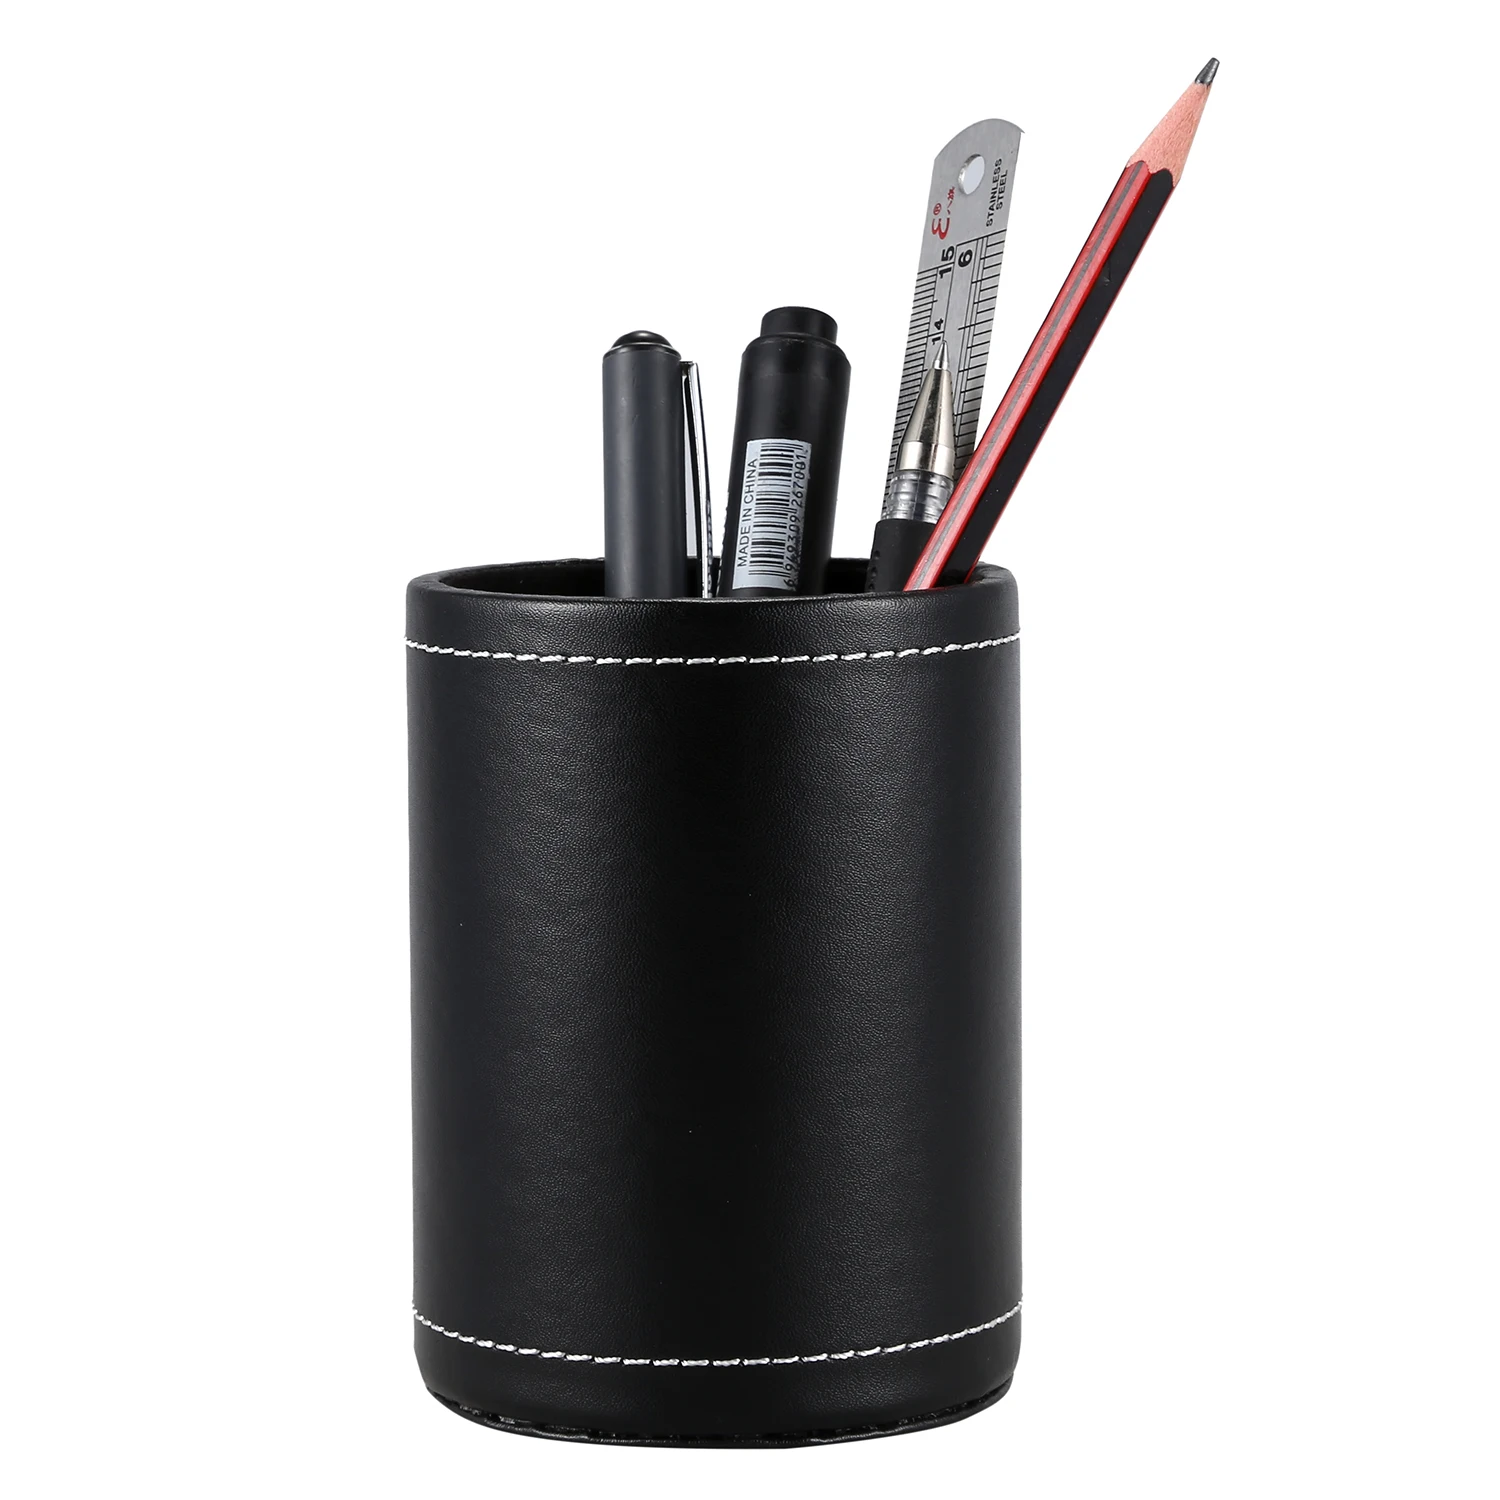 PPYY NEW-искусственная кожа ручка горшок ручка/карандаш/мобильный телефон/Настольные принадлежности Органайзер